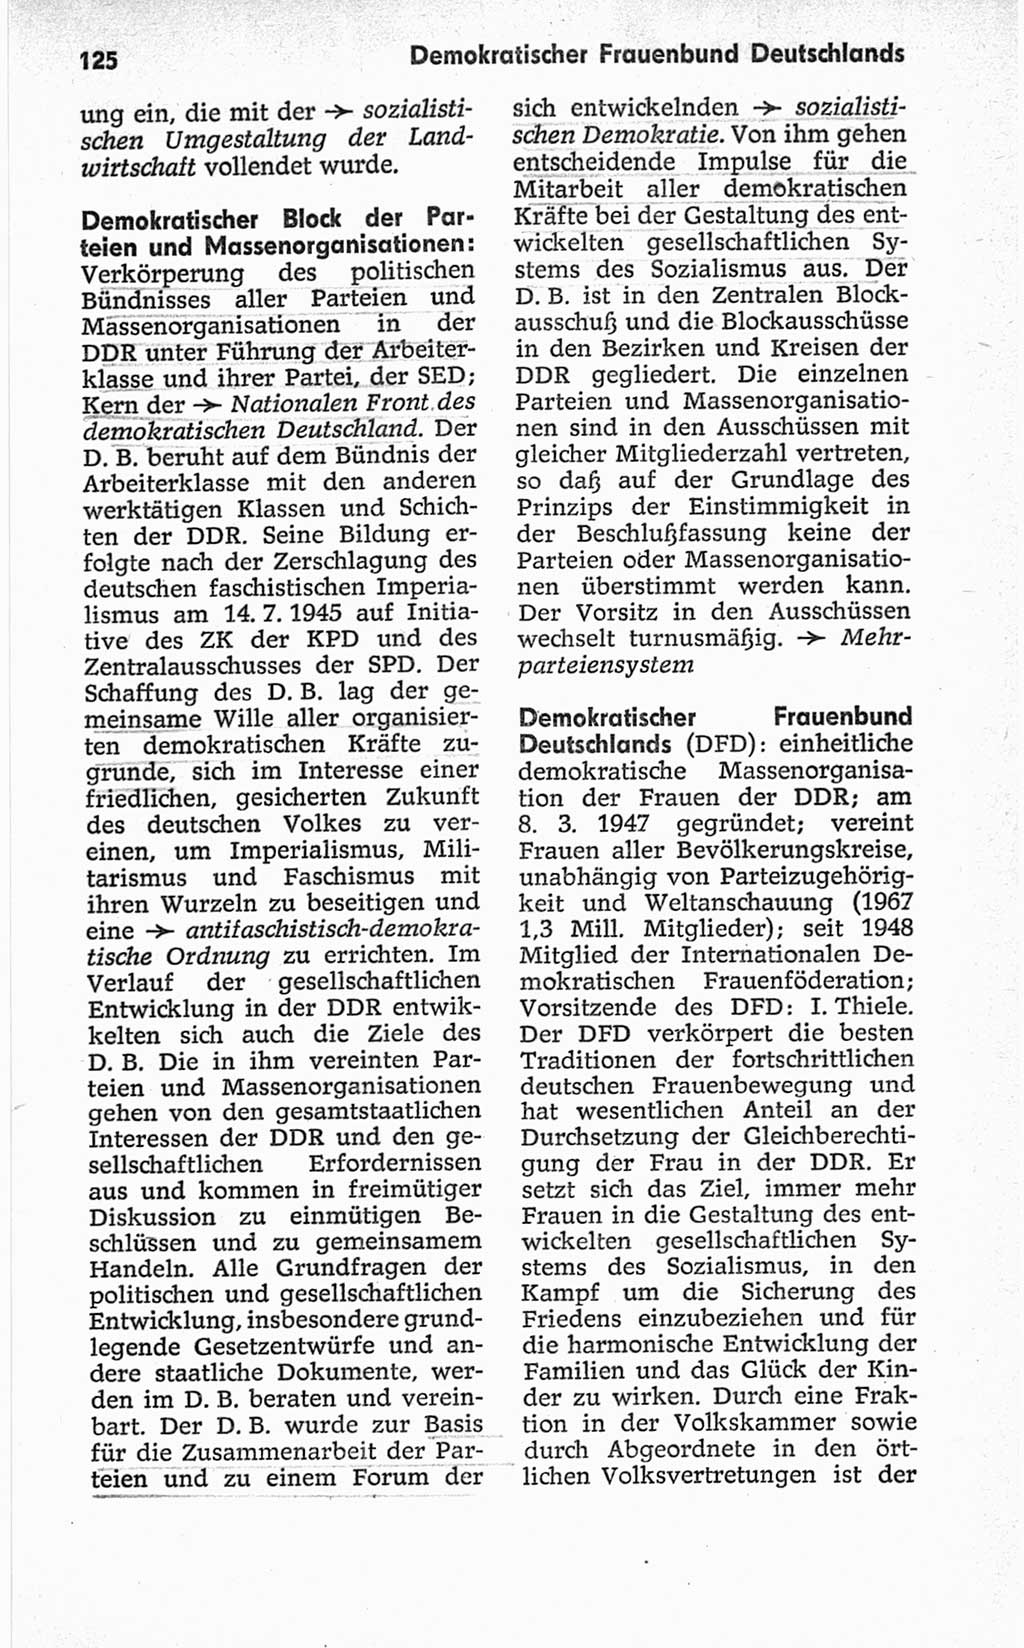 Kleines politisches Wörterbuch [Deutsche Demokratische Republik (DDR)] 1967, Seite 125 (Kl. pol. Wb. DDR 1967, S. 125)